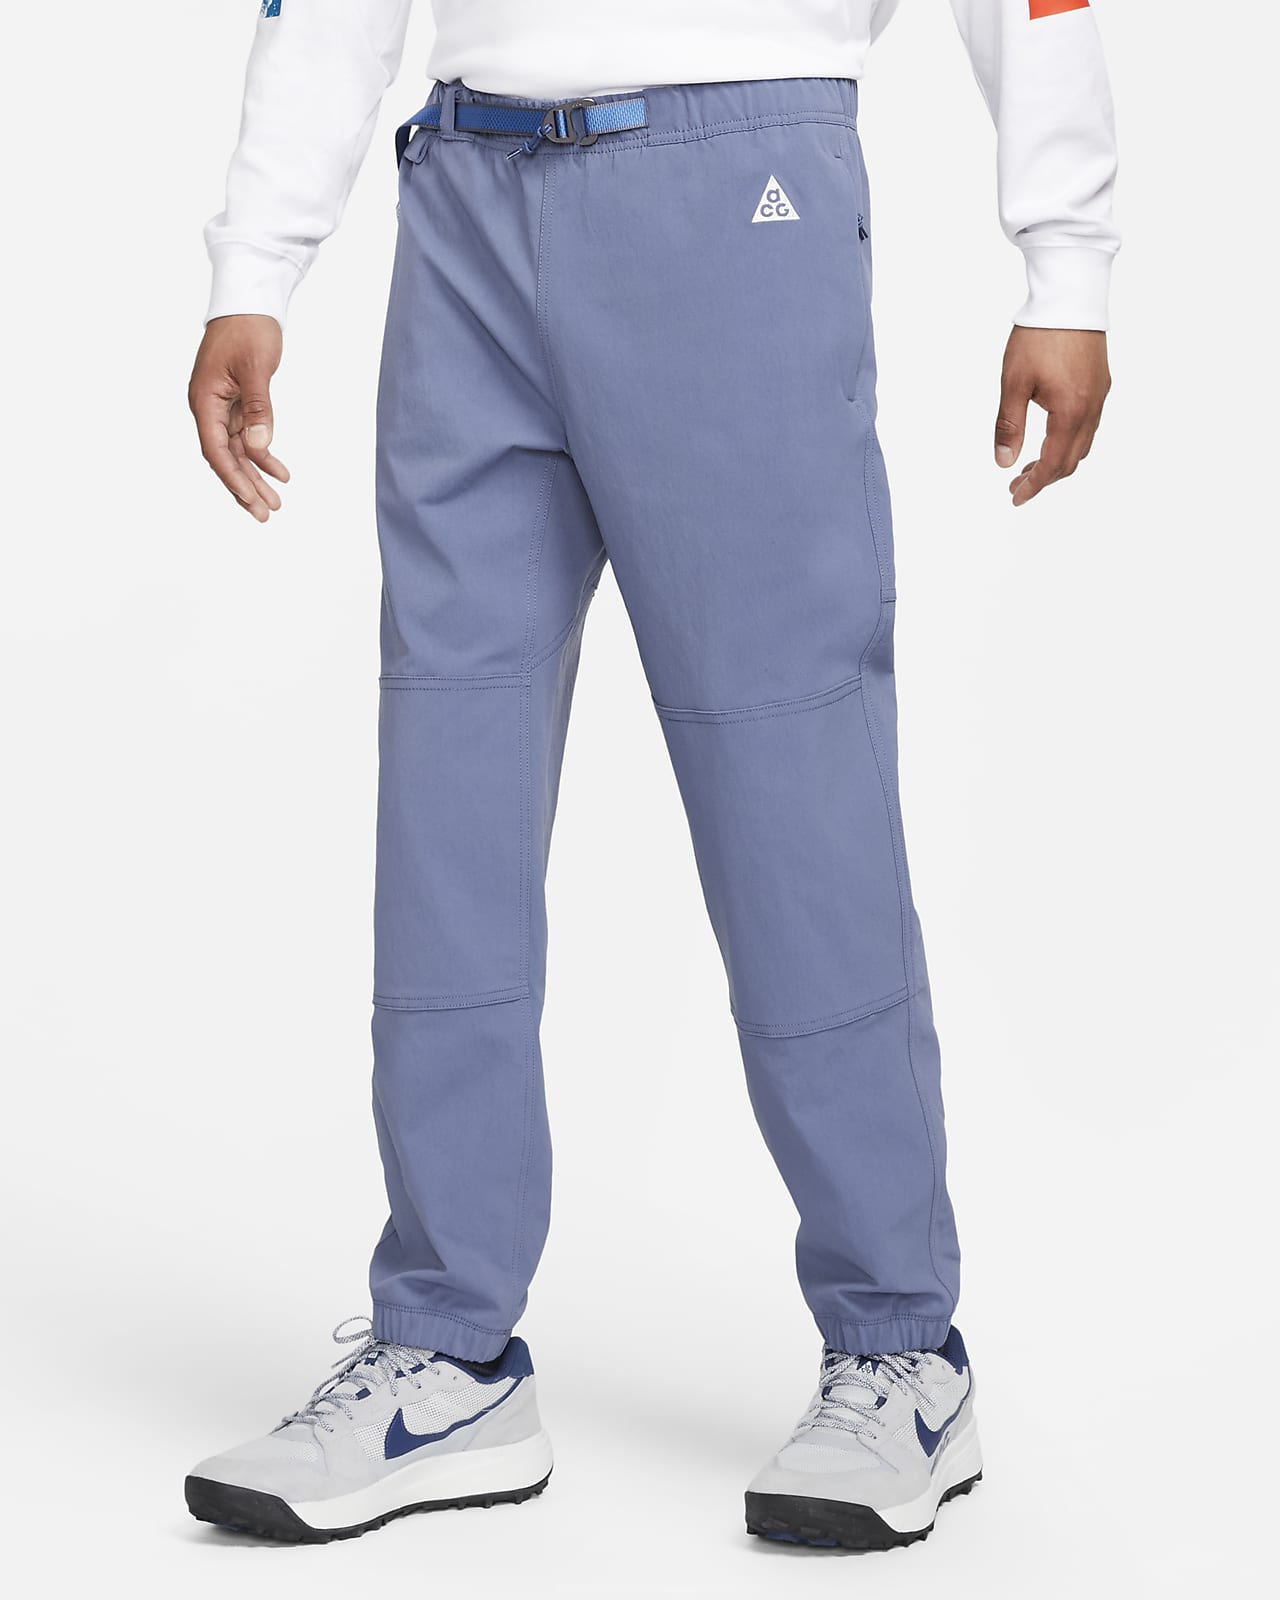 Men's Nike White Baseball Pants XL